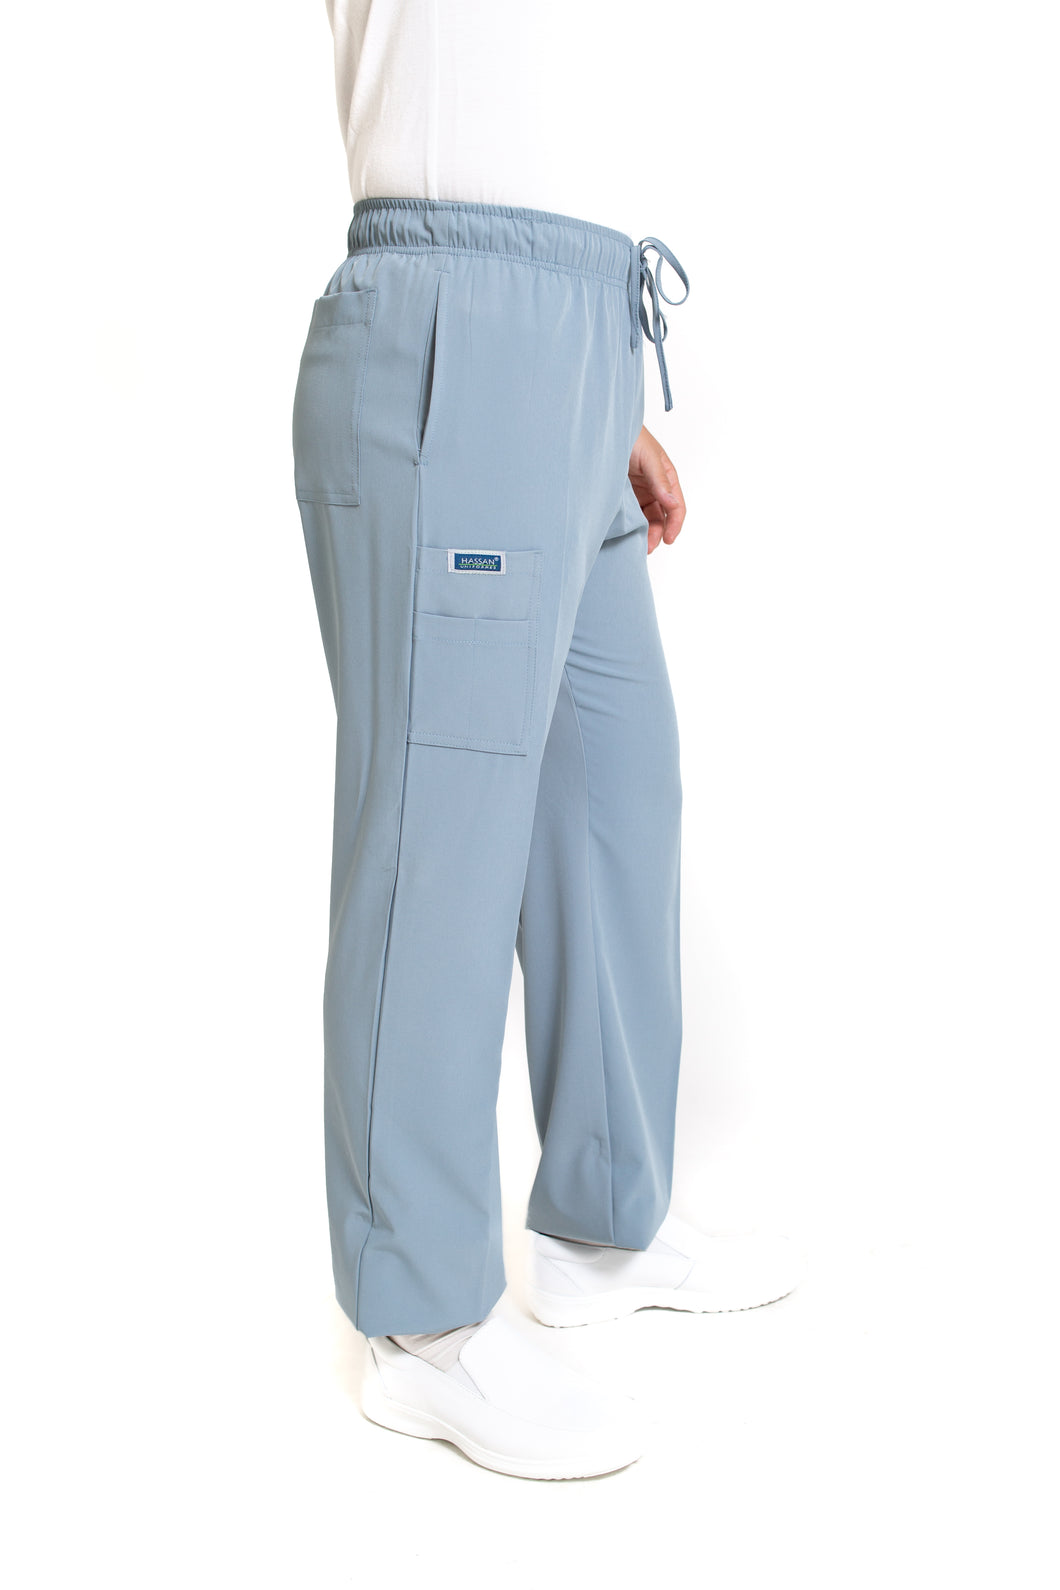 Pantalón Pant EA-02P REPELENTE A FLUIDOS-Color MISTY HOMBRE-HASSAN Uniformes